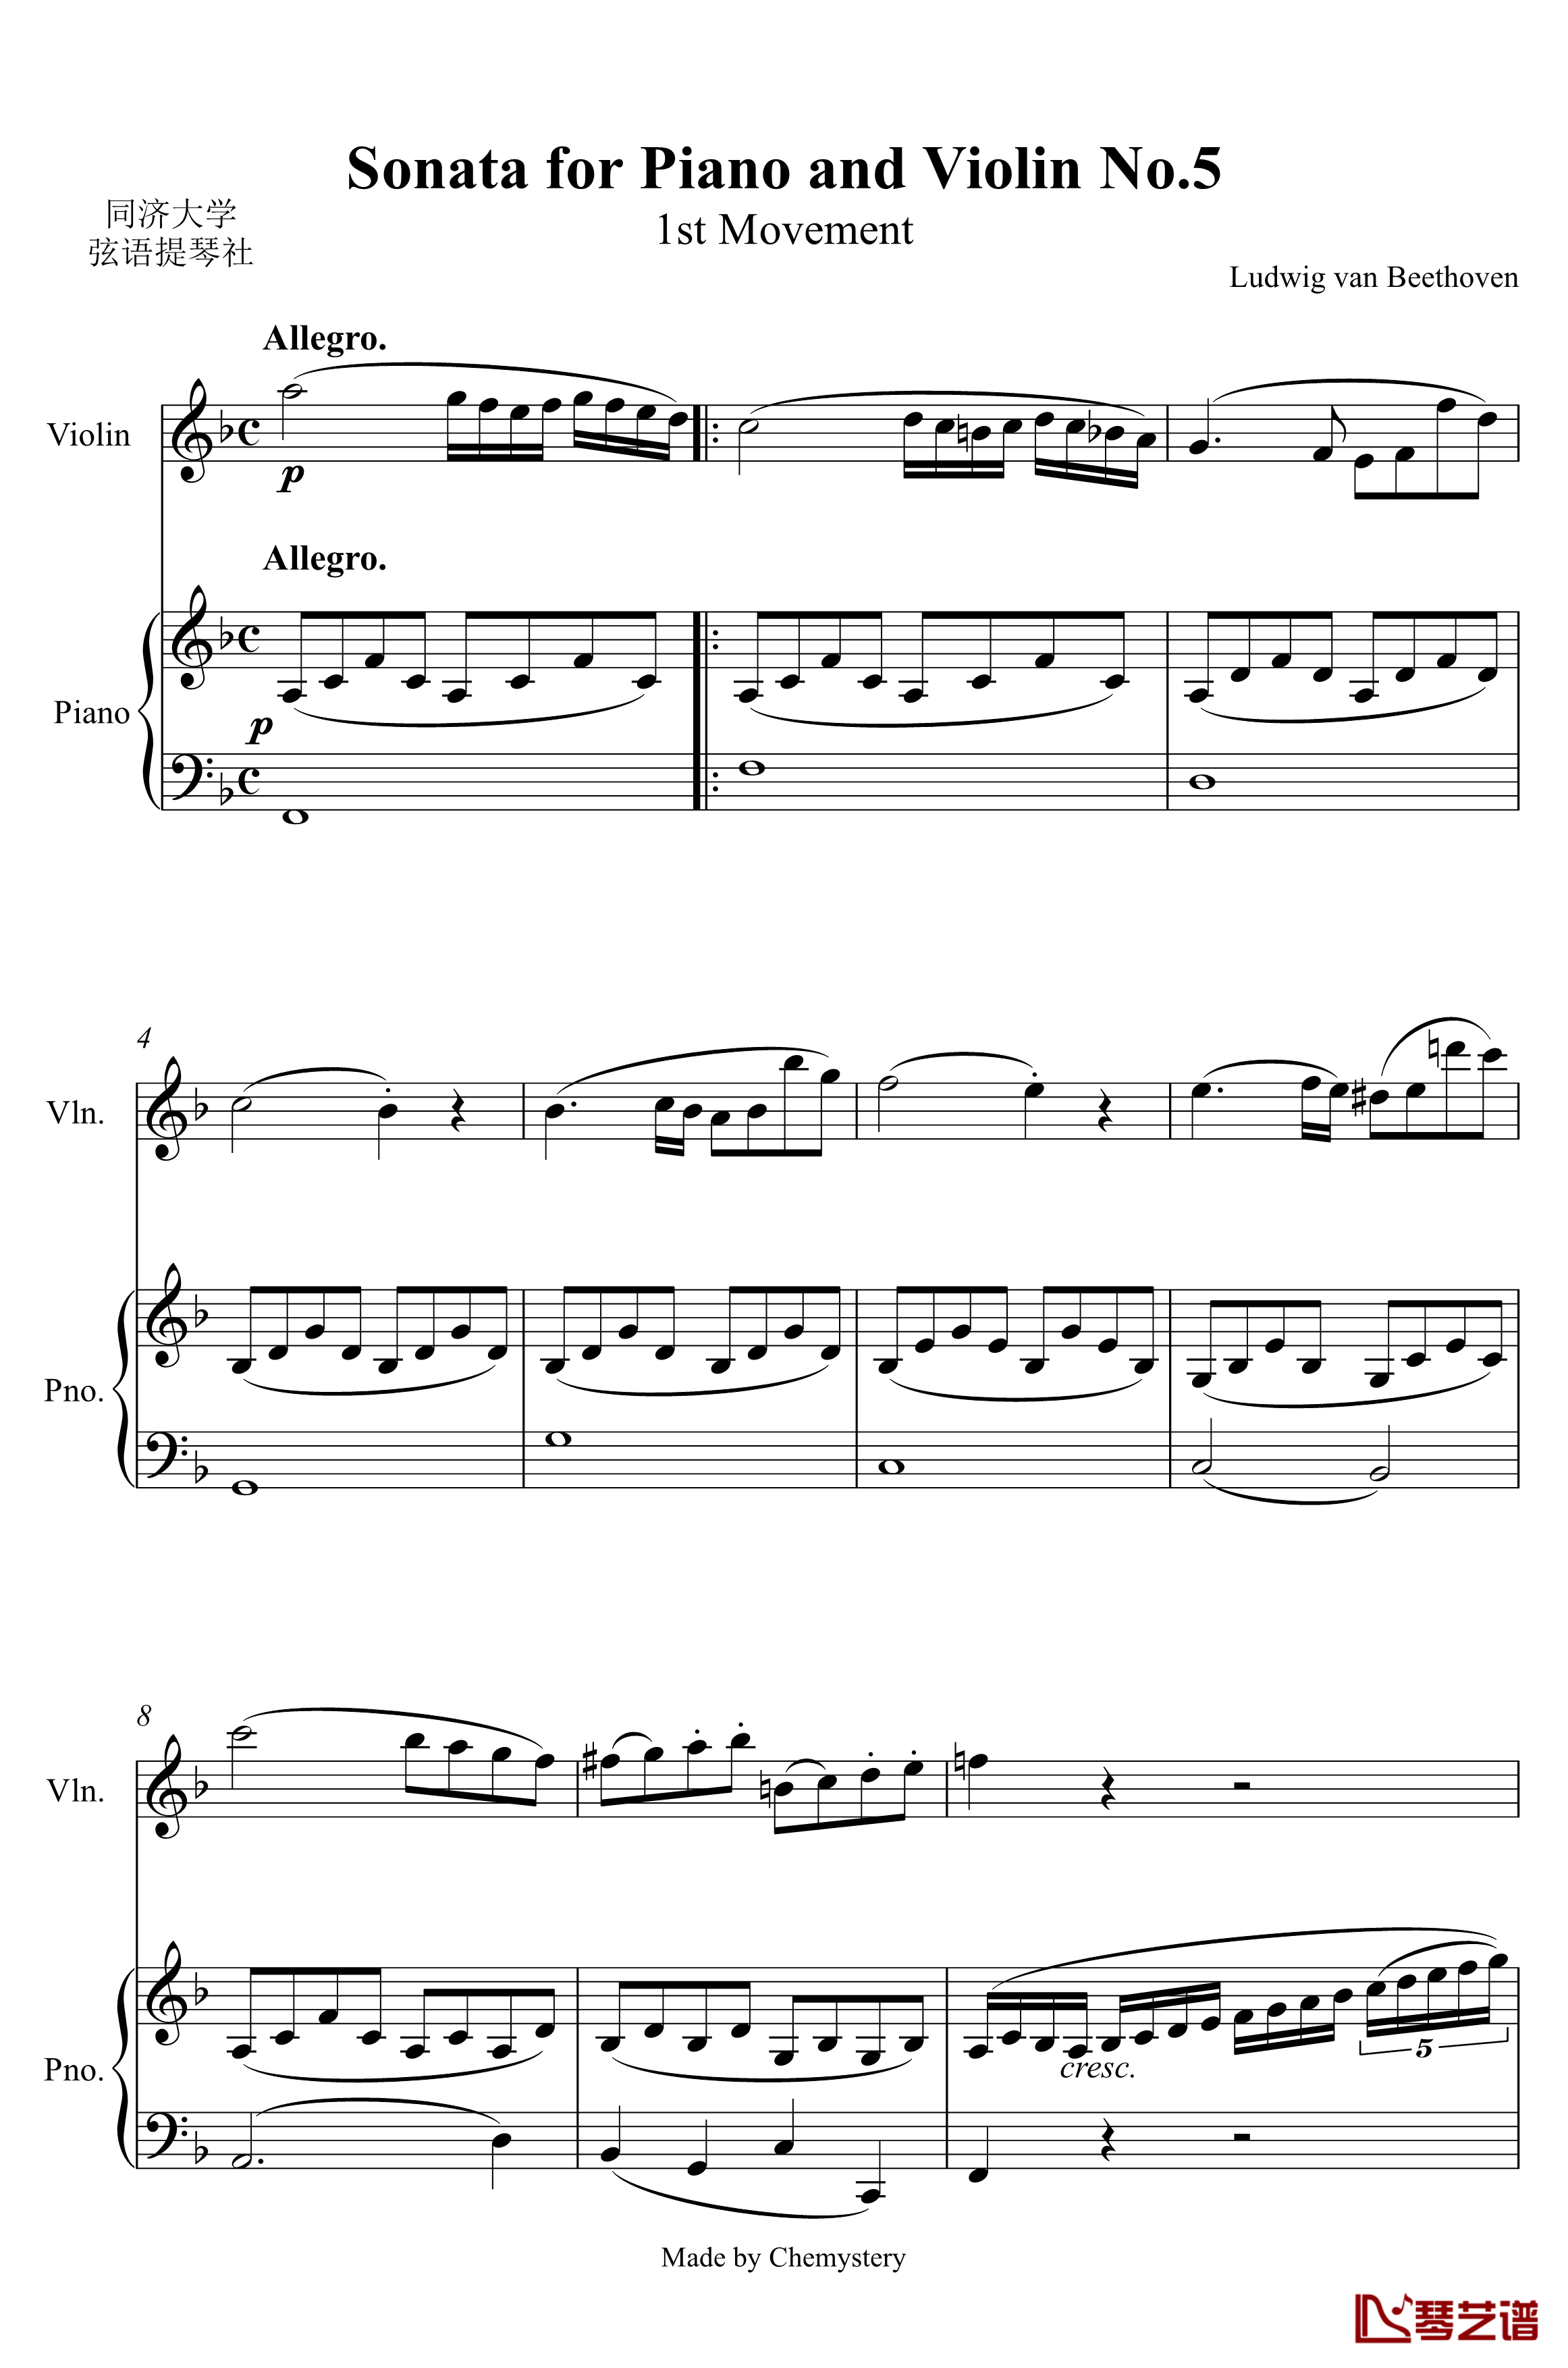 第5小提琴与钢琴奏鸣曲钢琴谱-第一乐章钢琴谱-贝多芬-beethoven1